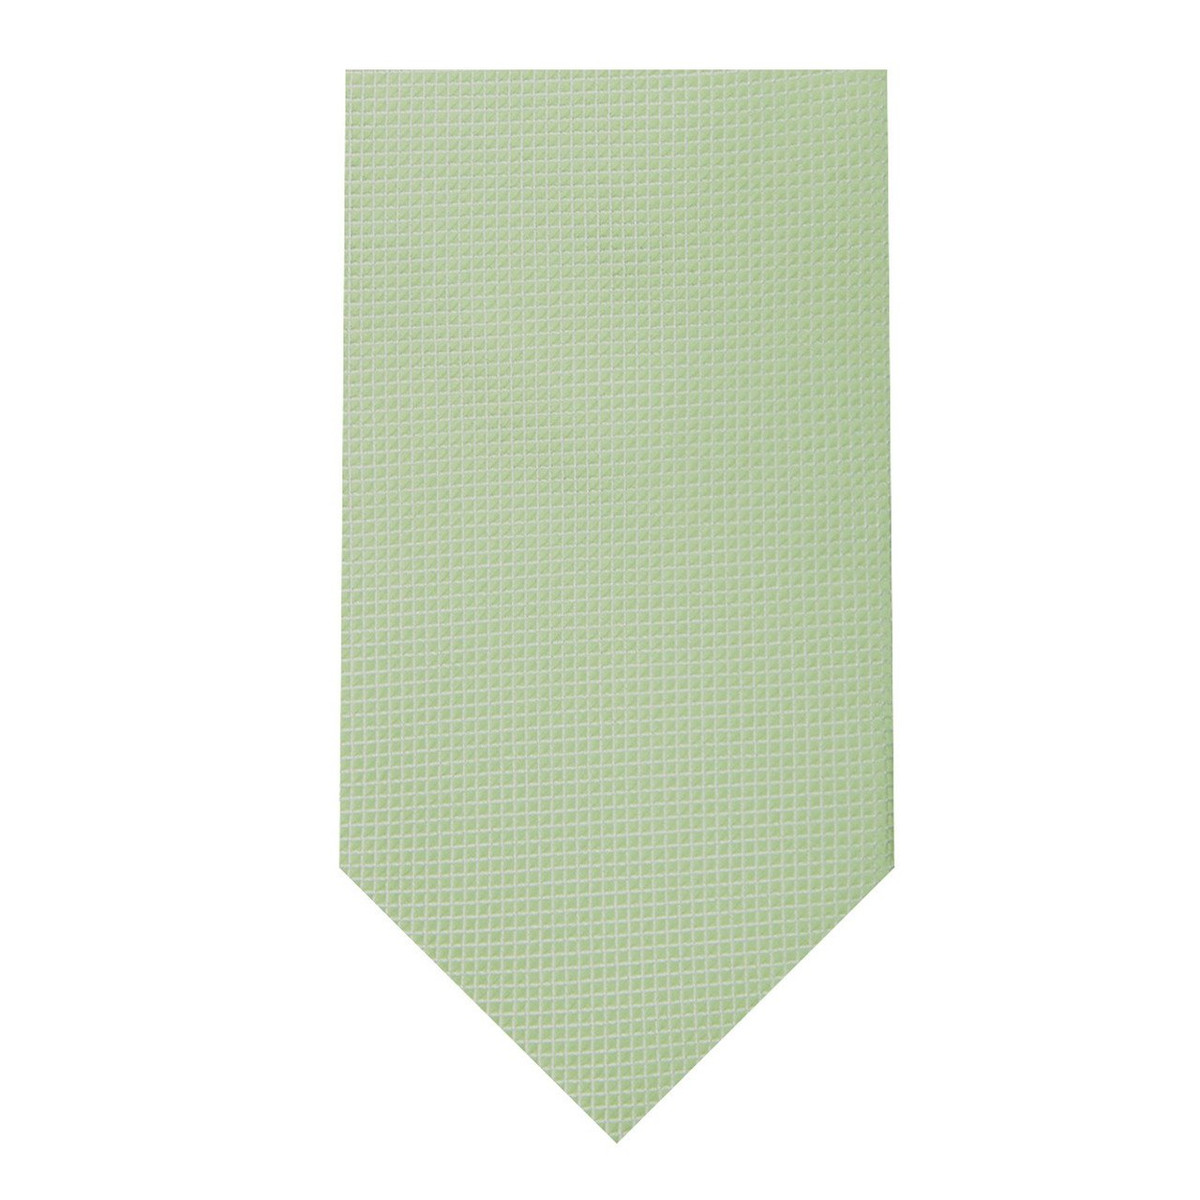 Men's Woven Subtle Mini Squares Neck Tie - Sage Green